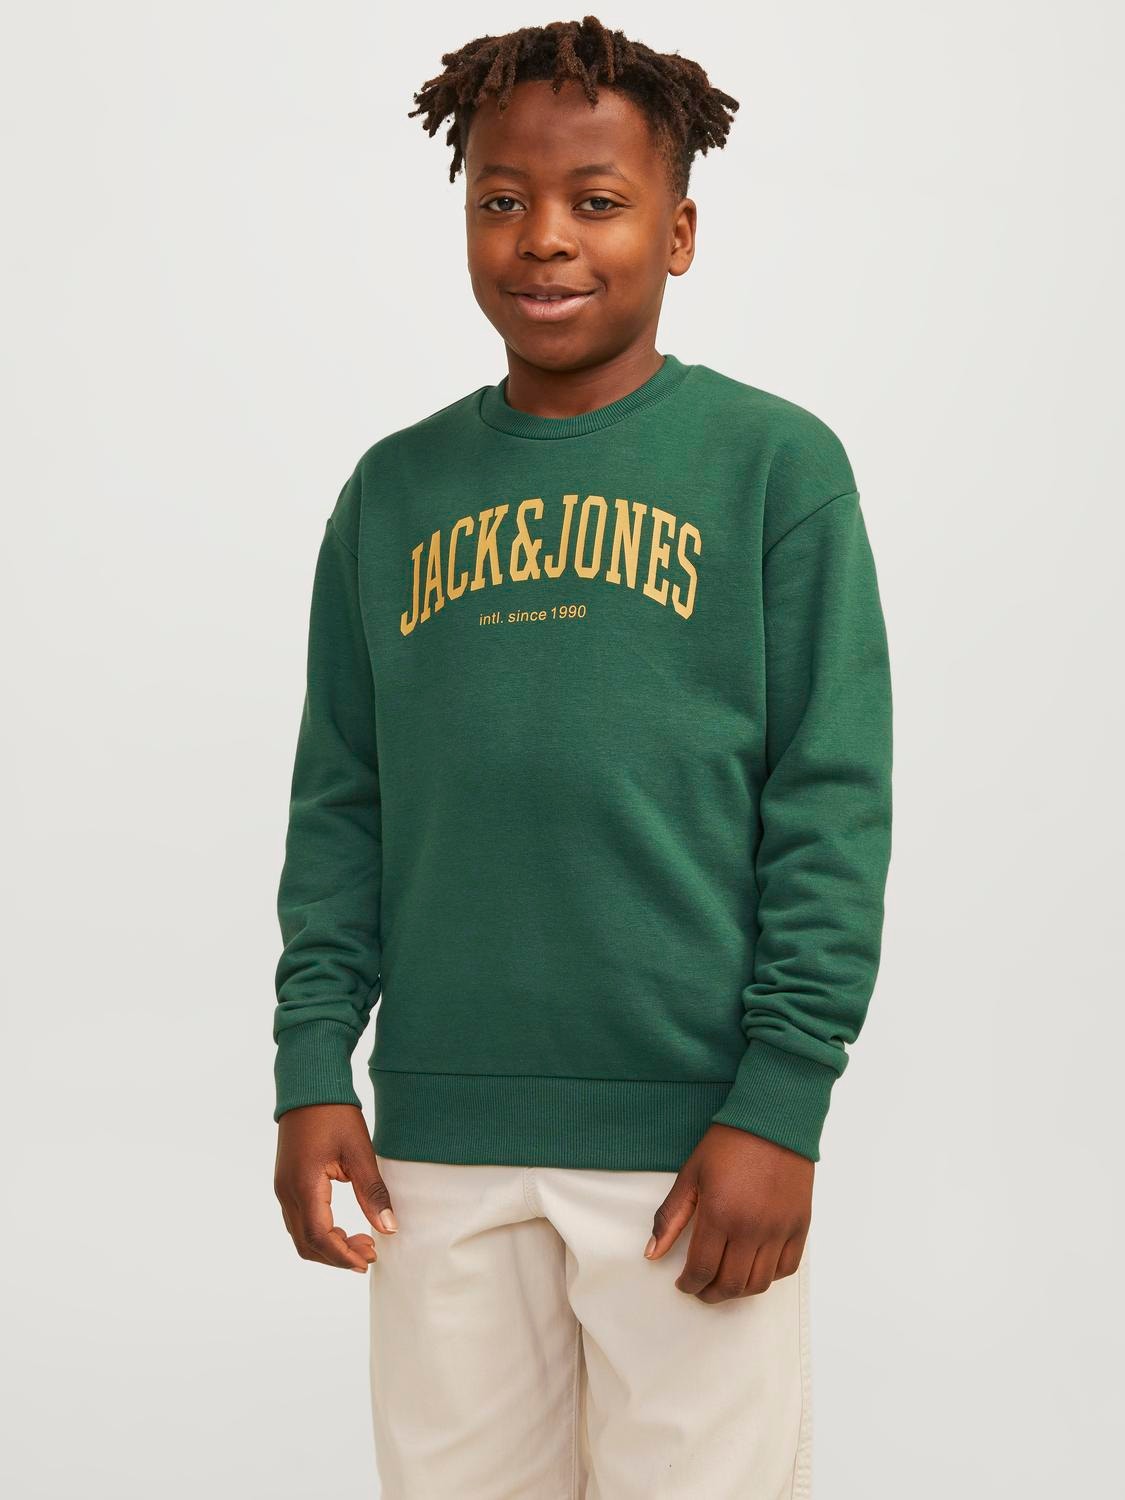 Jack & Jones Printed Crew neck Sweatshirt For boys -Dark Green - 12249347